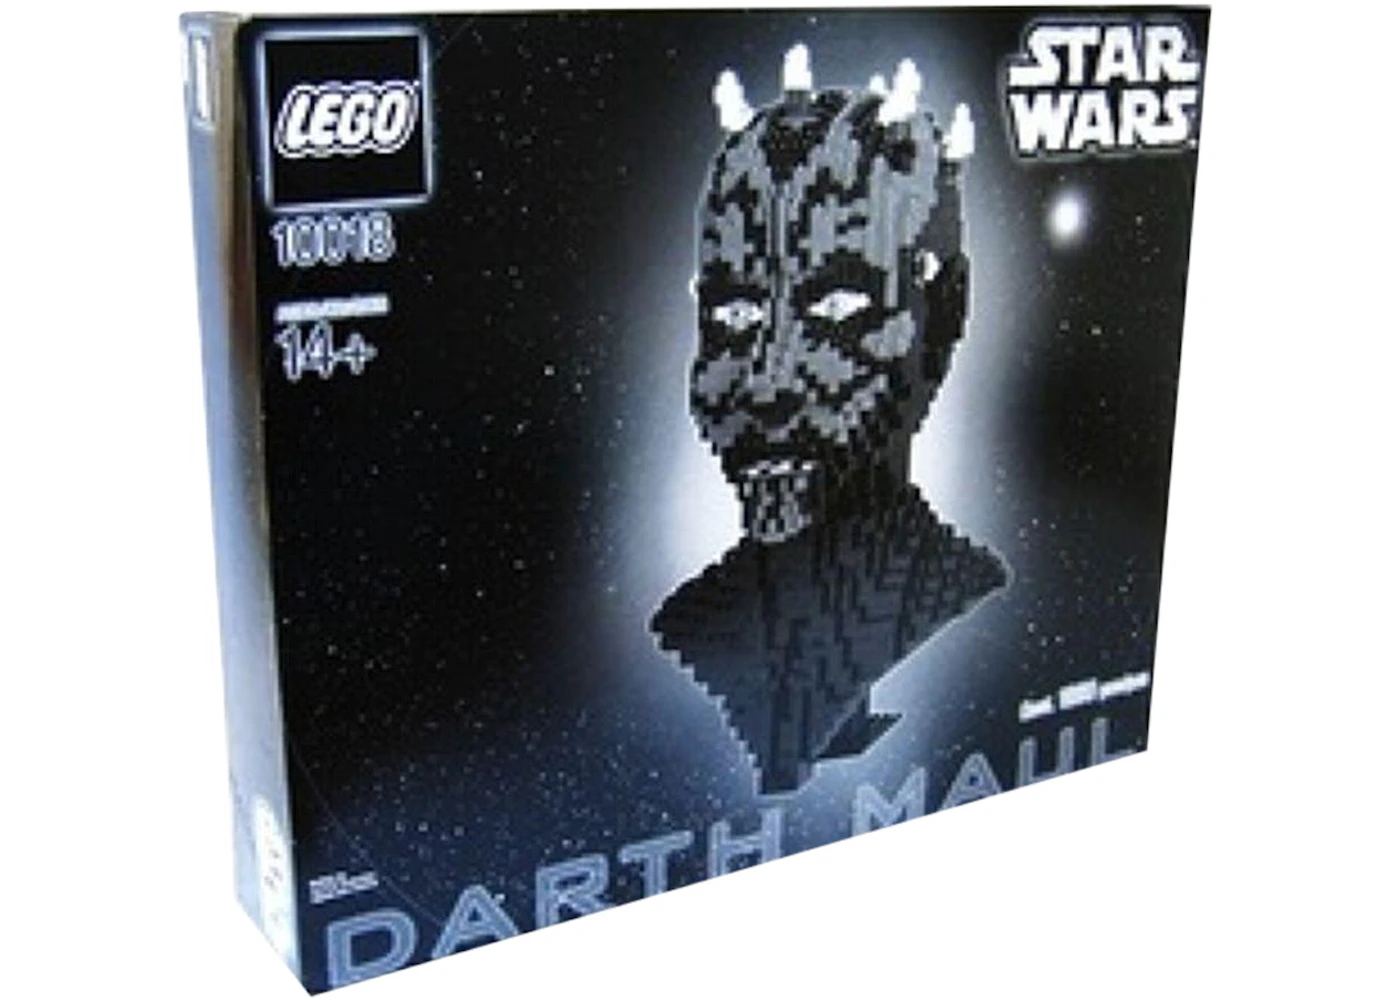 balance gnier Blive kold LEGO Star Wars Darth Maul Set 10018 - US